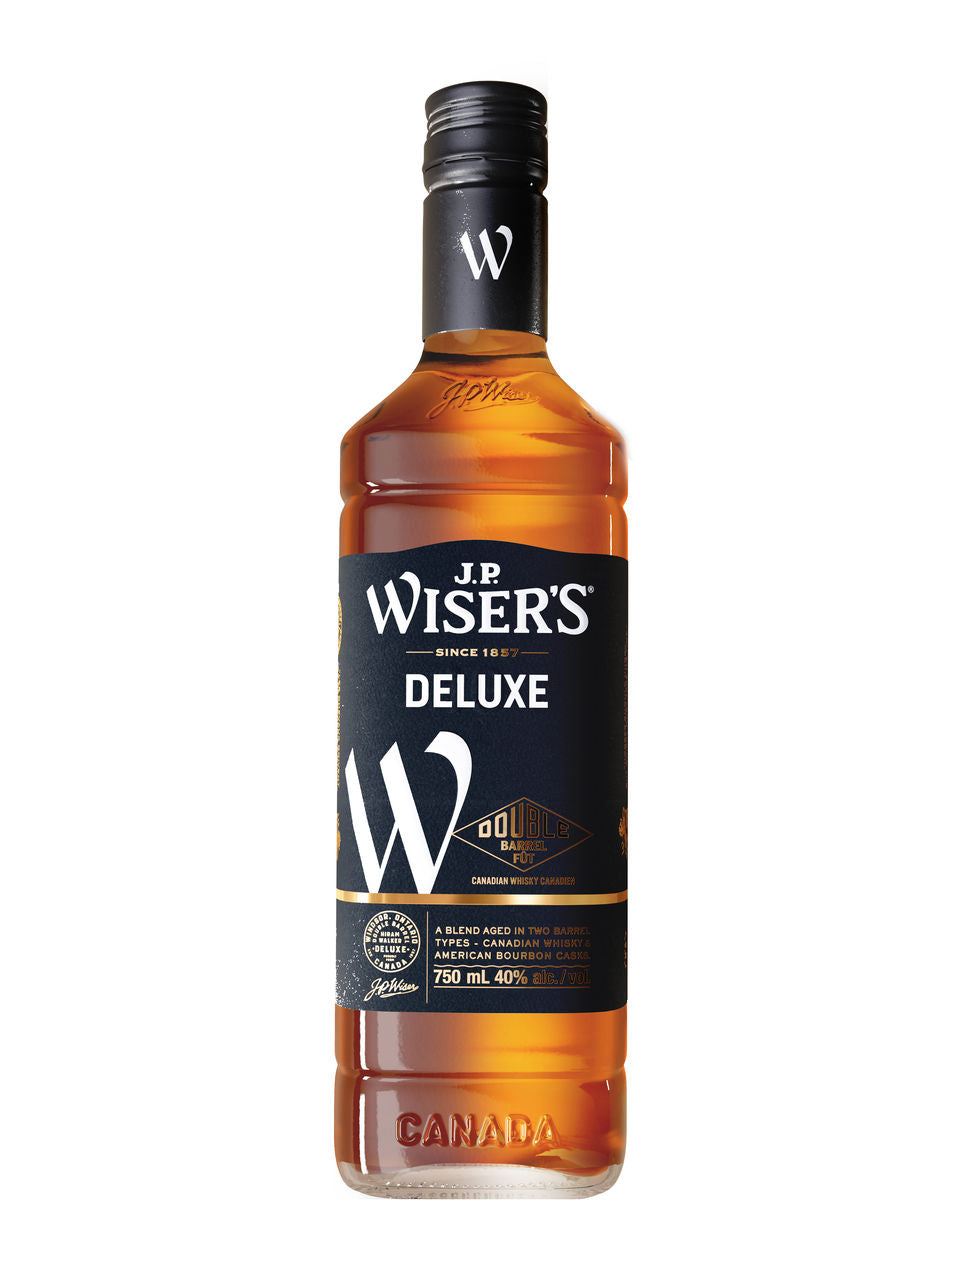 J.P. Wiser's Deluxe Whisky 750 mL bottle